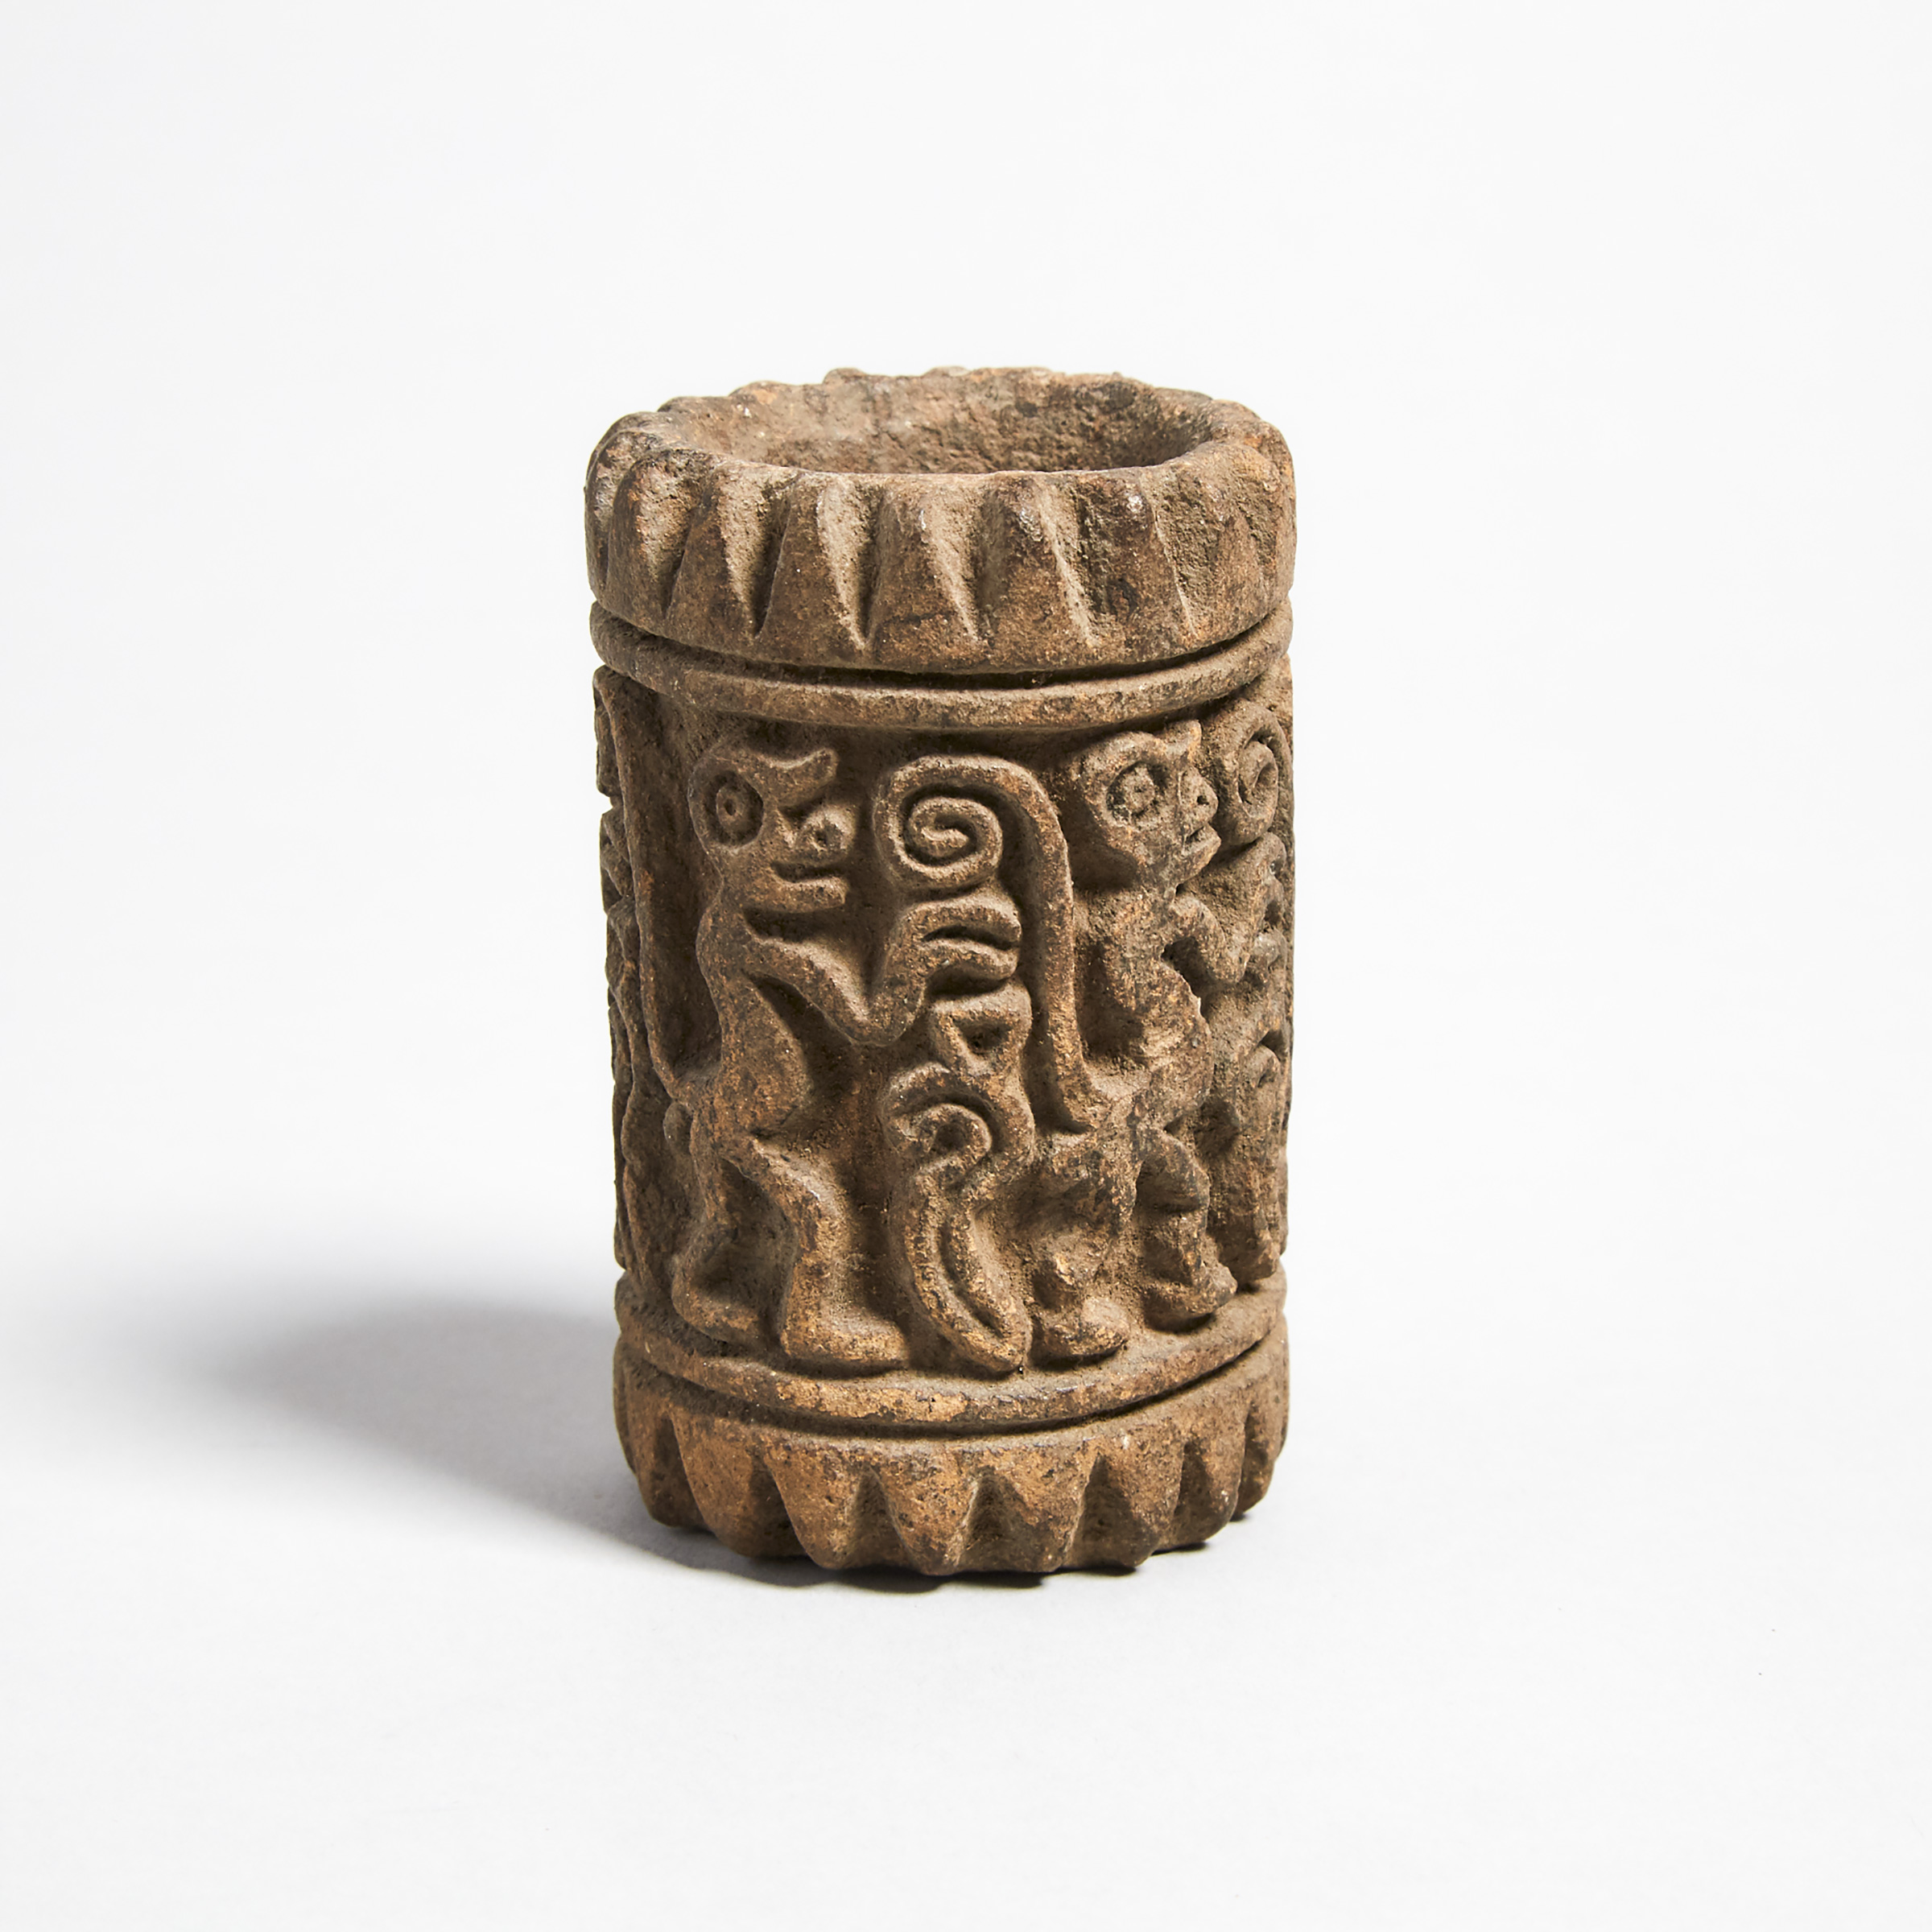 Manteno Pottery Roller Stamp with Monkey Parade, Ecuador 850-1600 A.D.